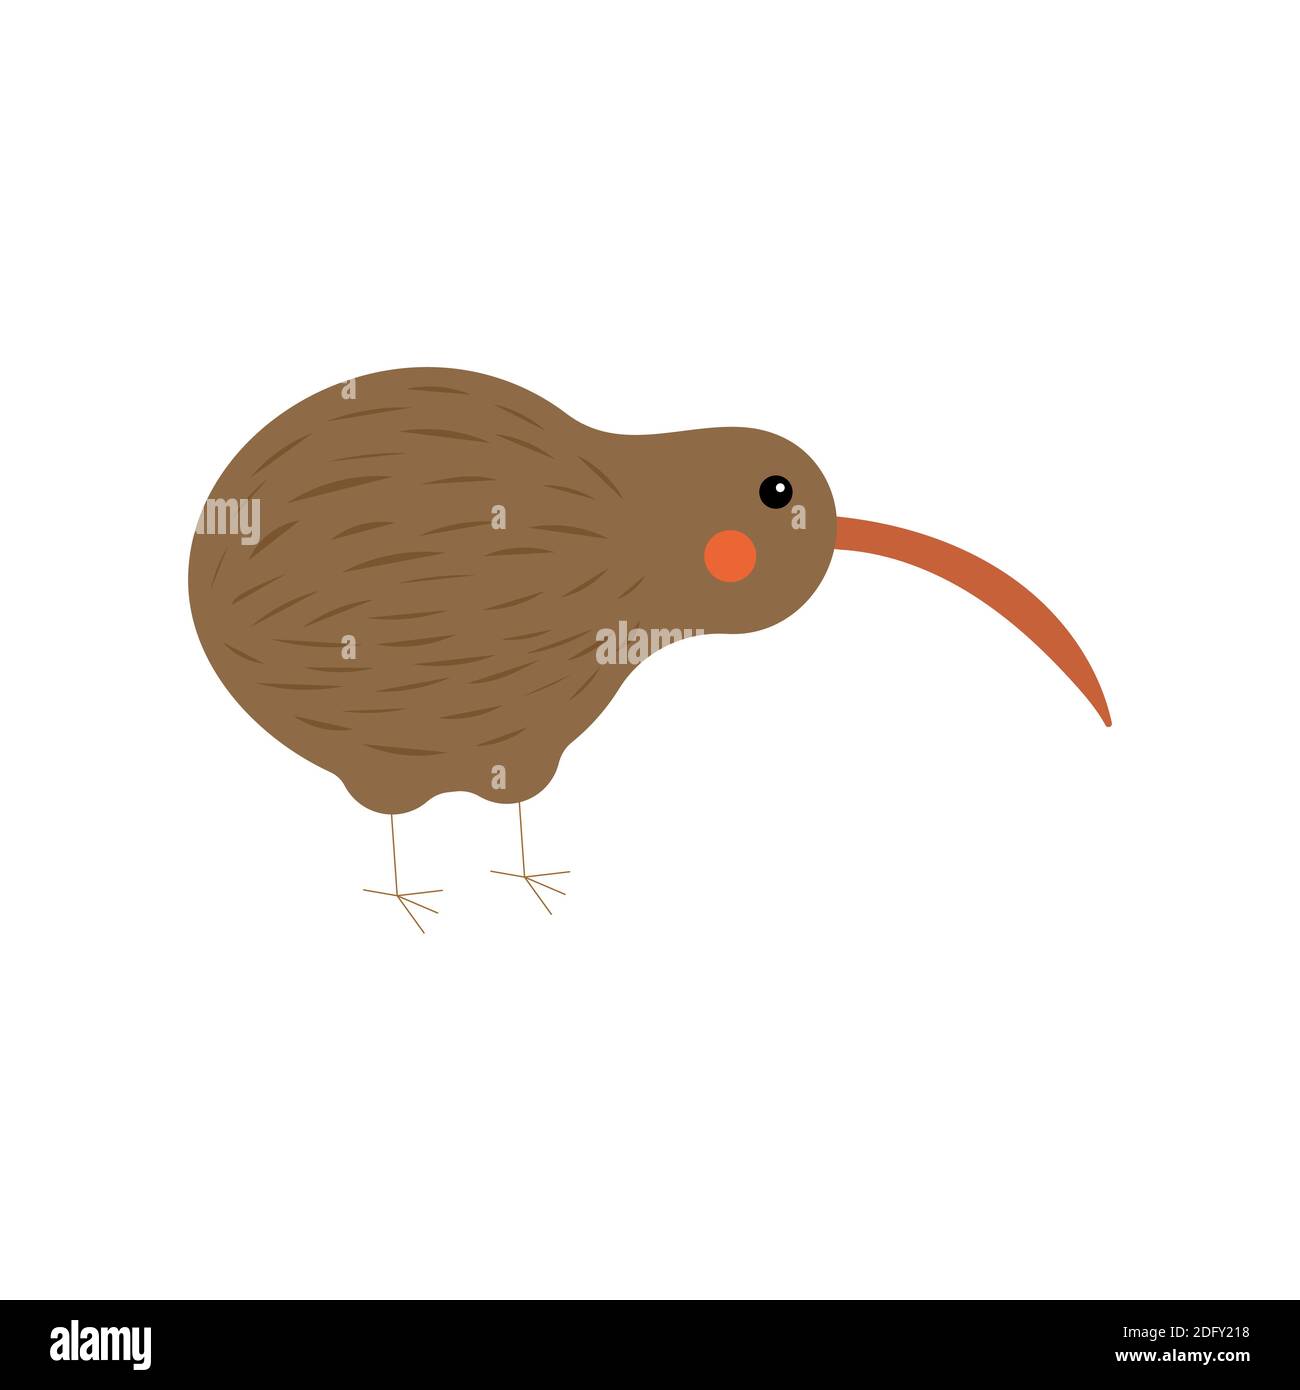 kiwi bird illustration for children on a white background. Vector Stock Vector